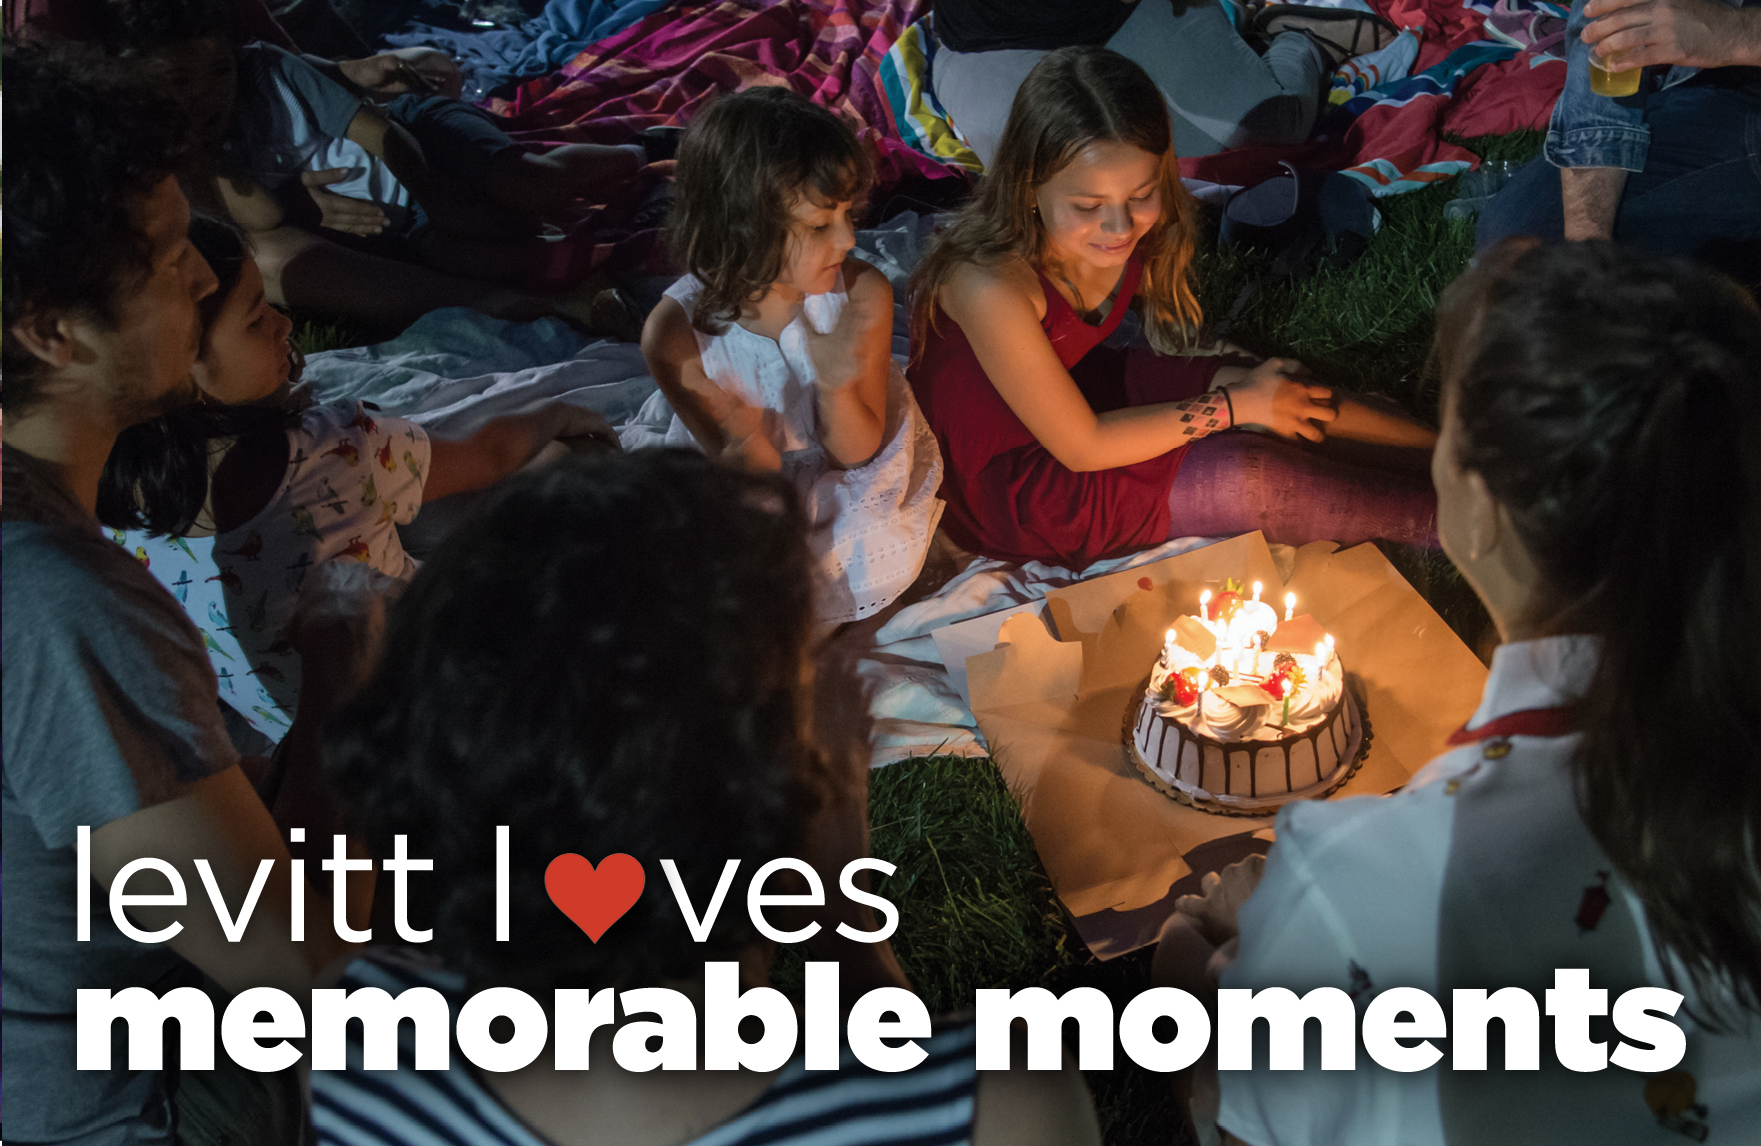 Levitt_loves_memorable_moments